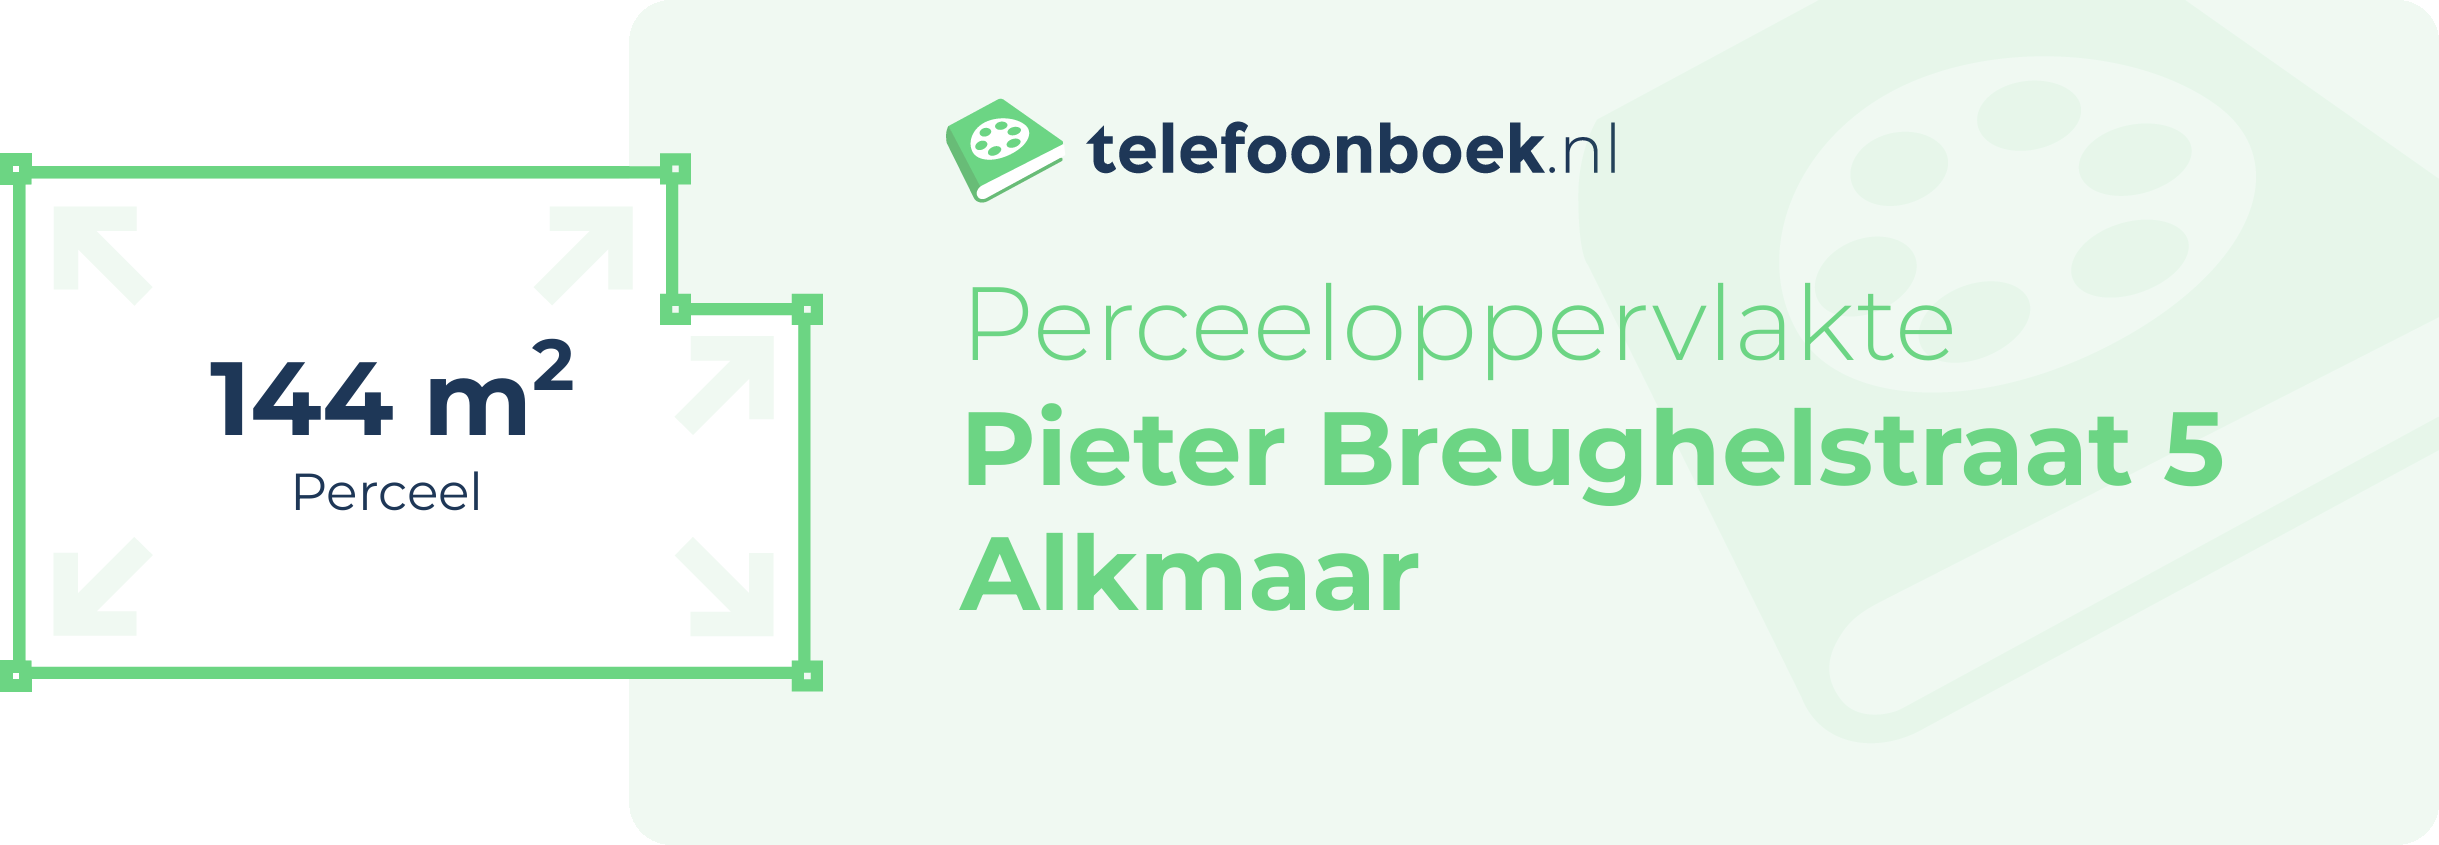 Perceeloppervlakte Pieter Breughelstraat 5 Alkmaar